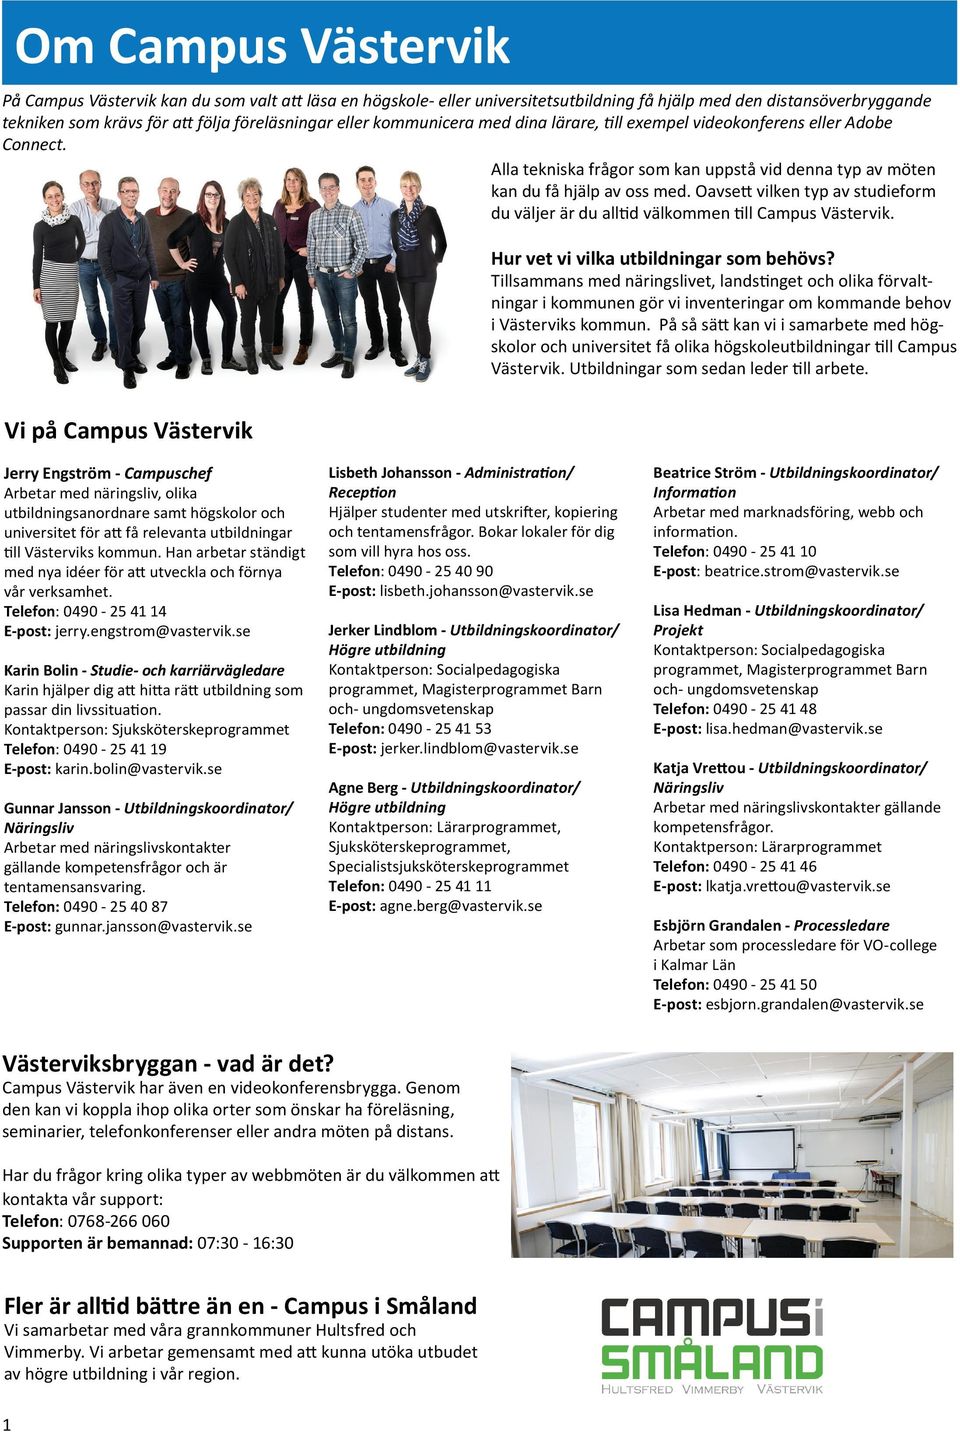 Oavsett vilken typ av studieform du väljer är du alltid välkommen till Campus Västervik. Hur vet vi vilka utbildningar som behövs?